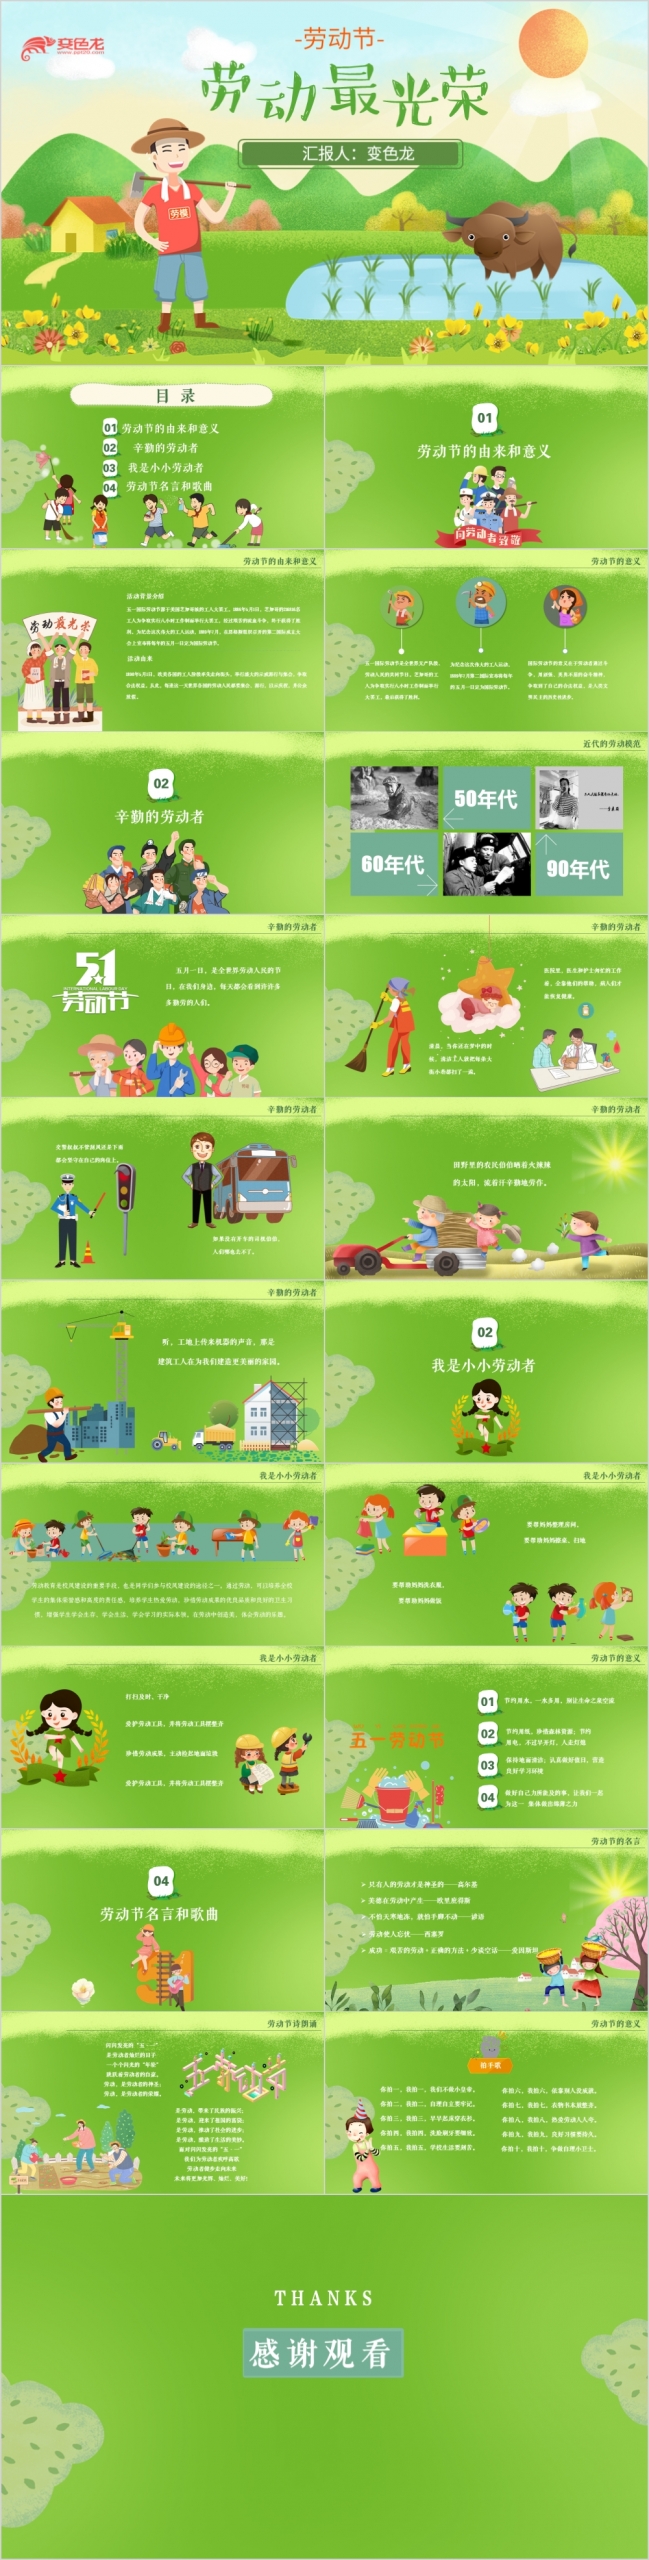 绿色卡通五一劳动节幼儿园小学儿童教育培训动态ppt模板